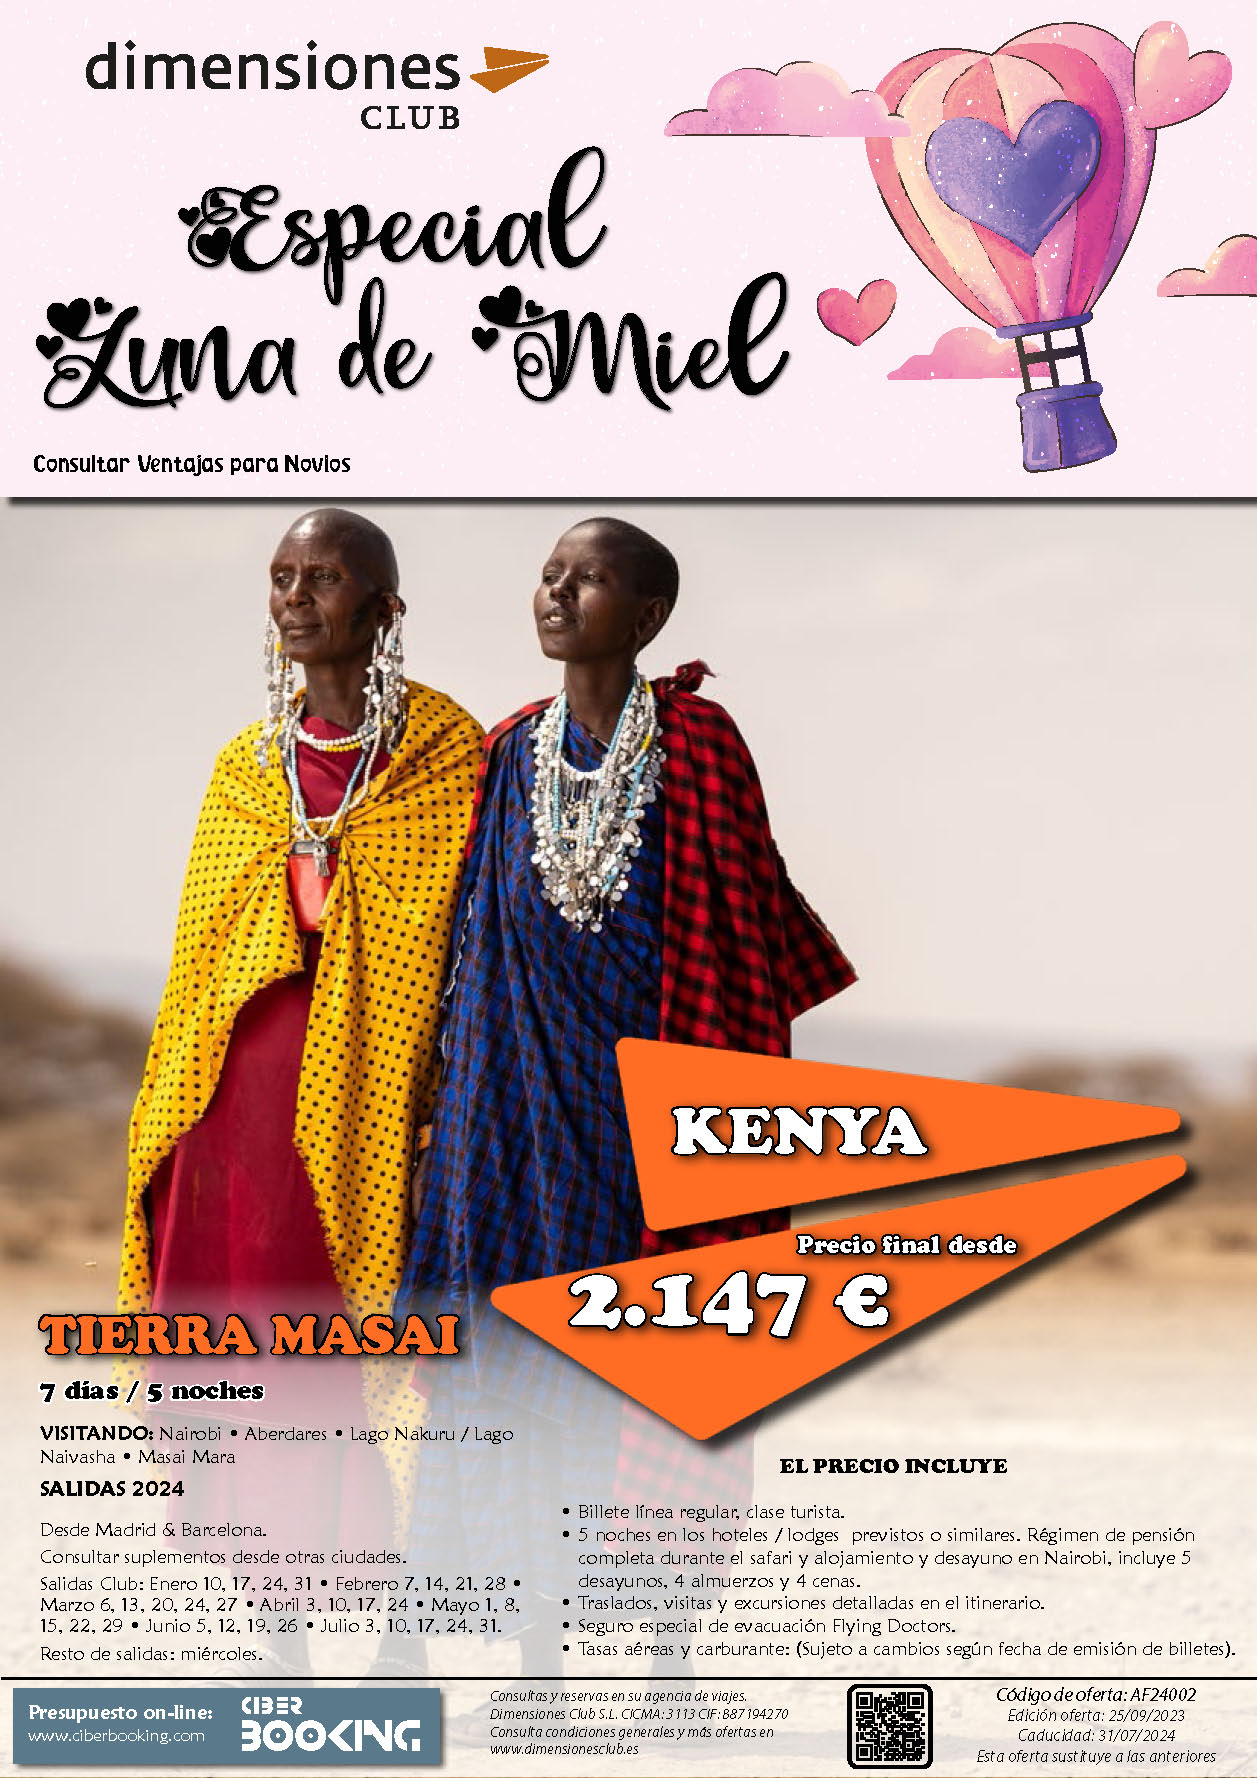 Oferta Dimensiones Club 2024 Luna de Miel en Kenia Tierra Masai 7 dias salidas desde Madrid y Barcelona